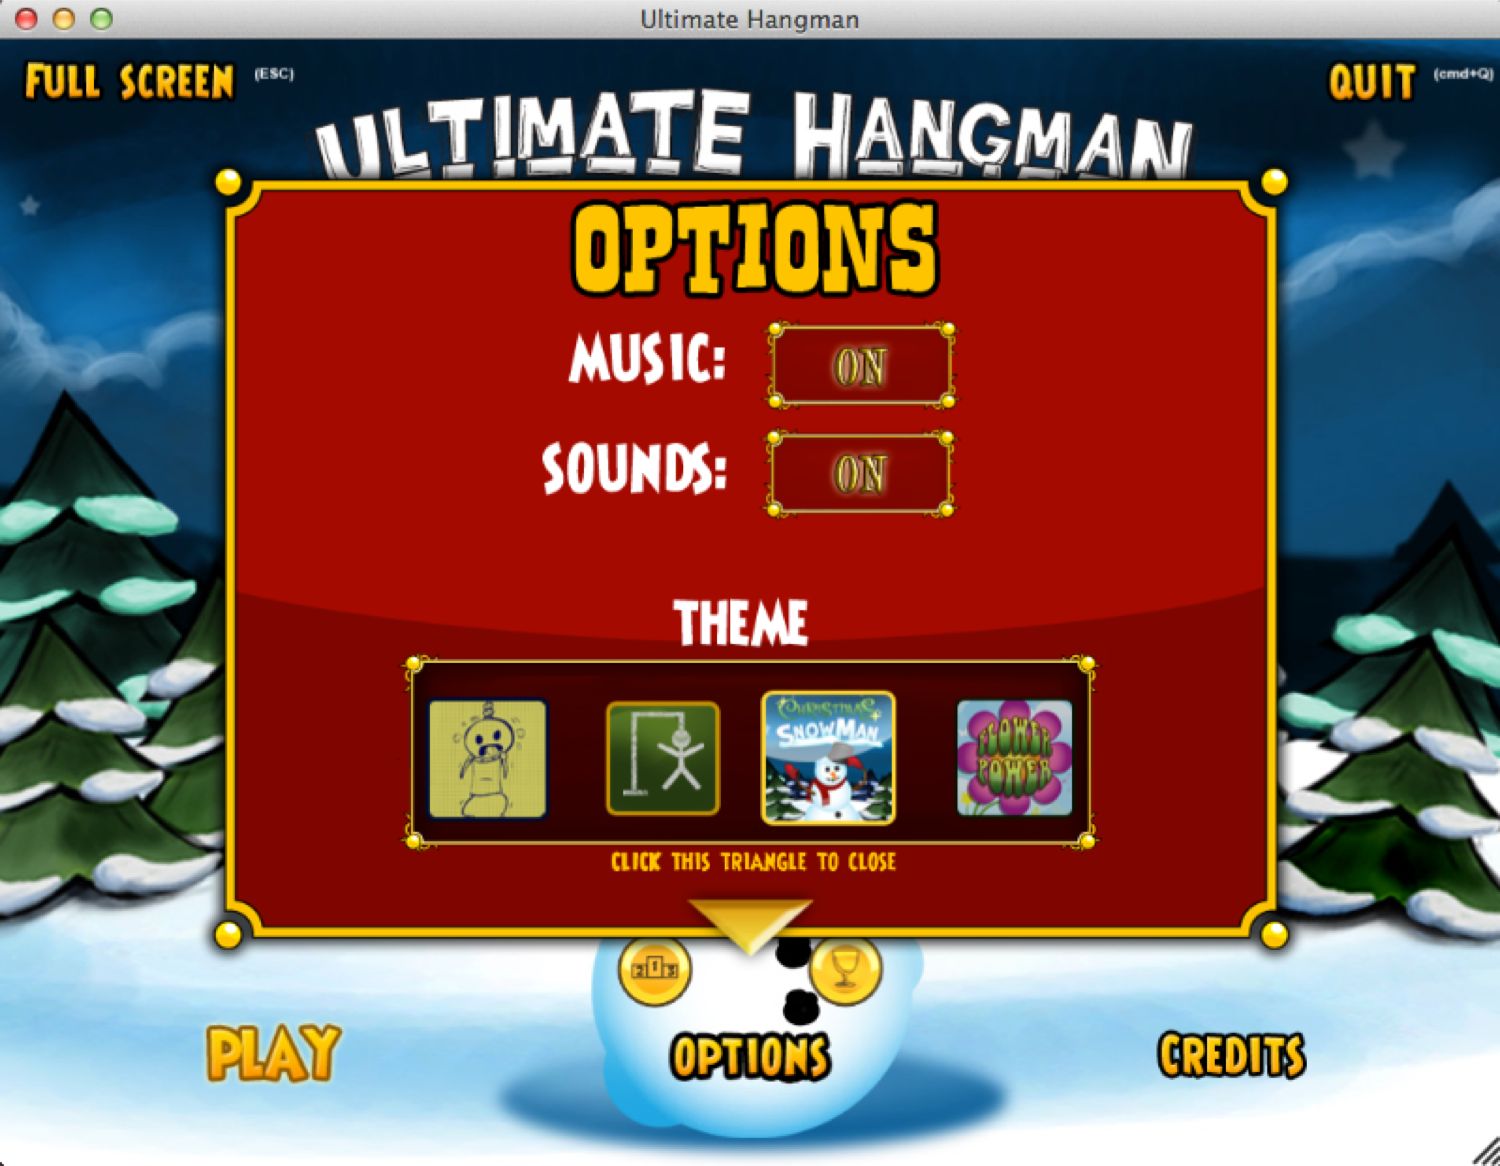 Ultimate Hangman 1.0 : Options Menu